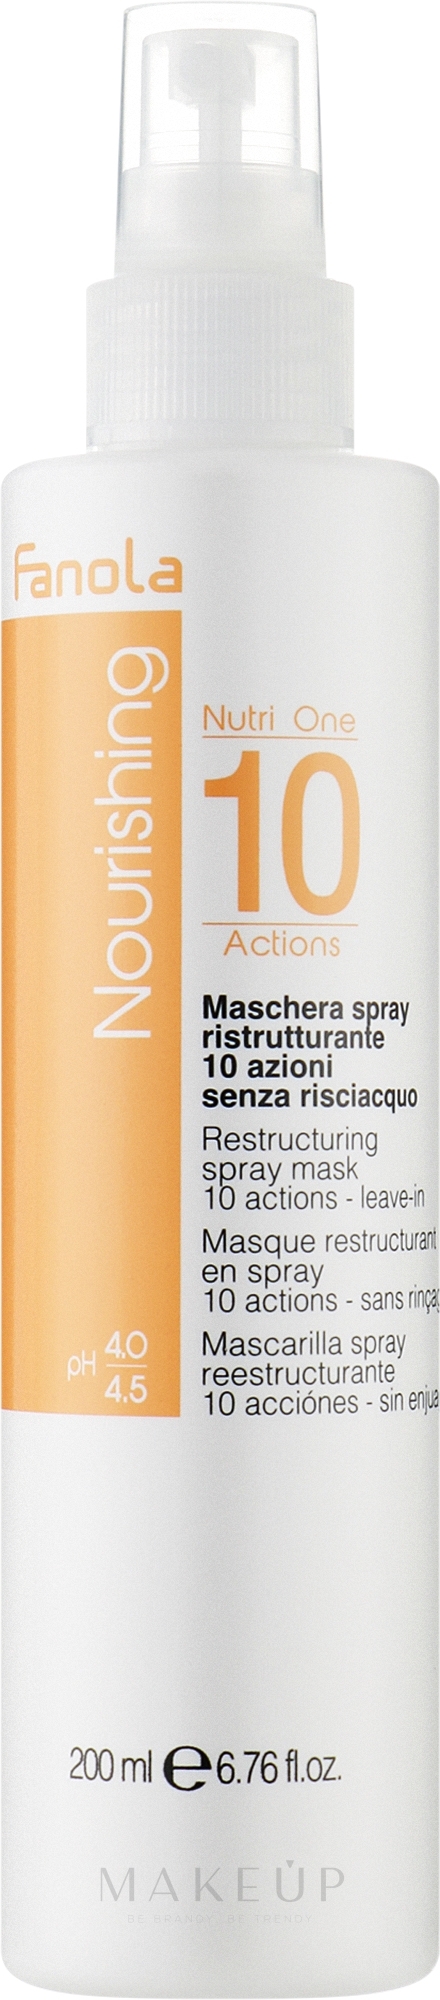 Nährende und restrukturierende Haarmaske in Sprayform ohne Ausspülen - Fanola Nourishing Nutri One 10 Actions Restructuring Spray Mask — Bild 200 ml